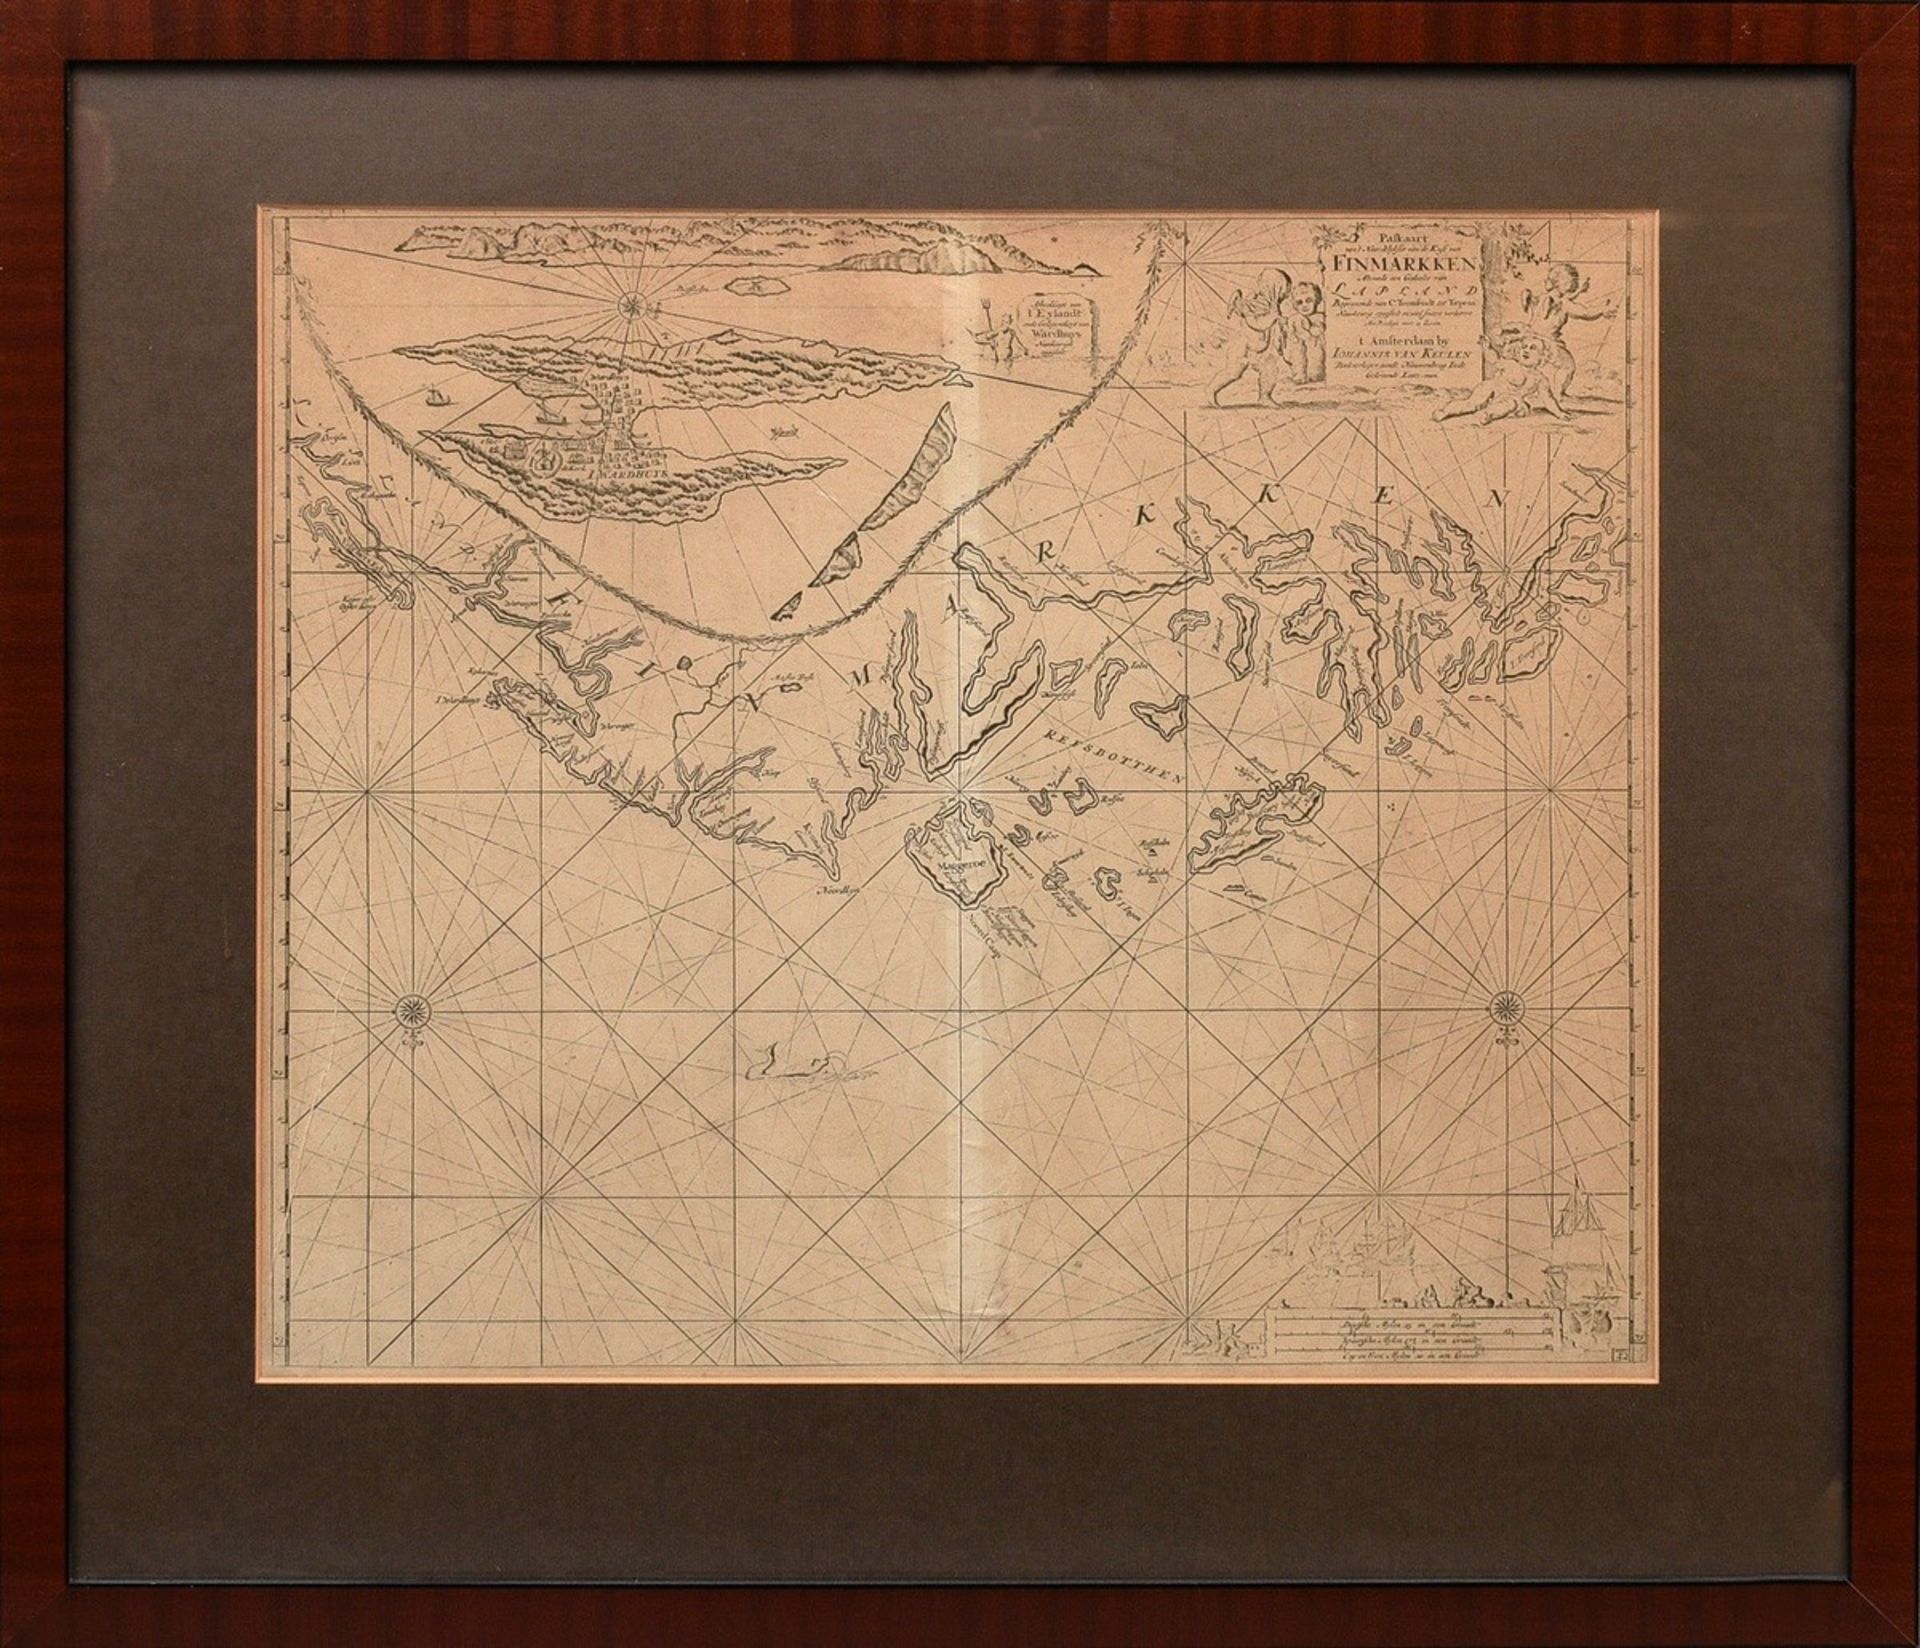 Keulen, Johannes van (1654-1715) „Paskaart vant Noordelykste van de kust van Finmarken … Lapland“,  - Bild 2 aus 6